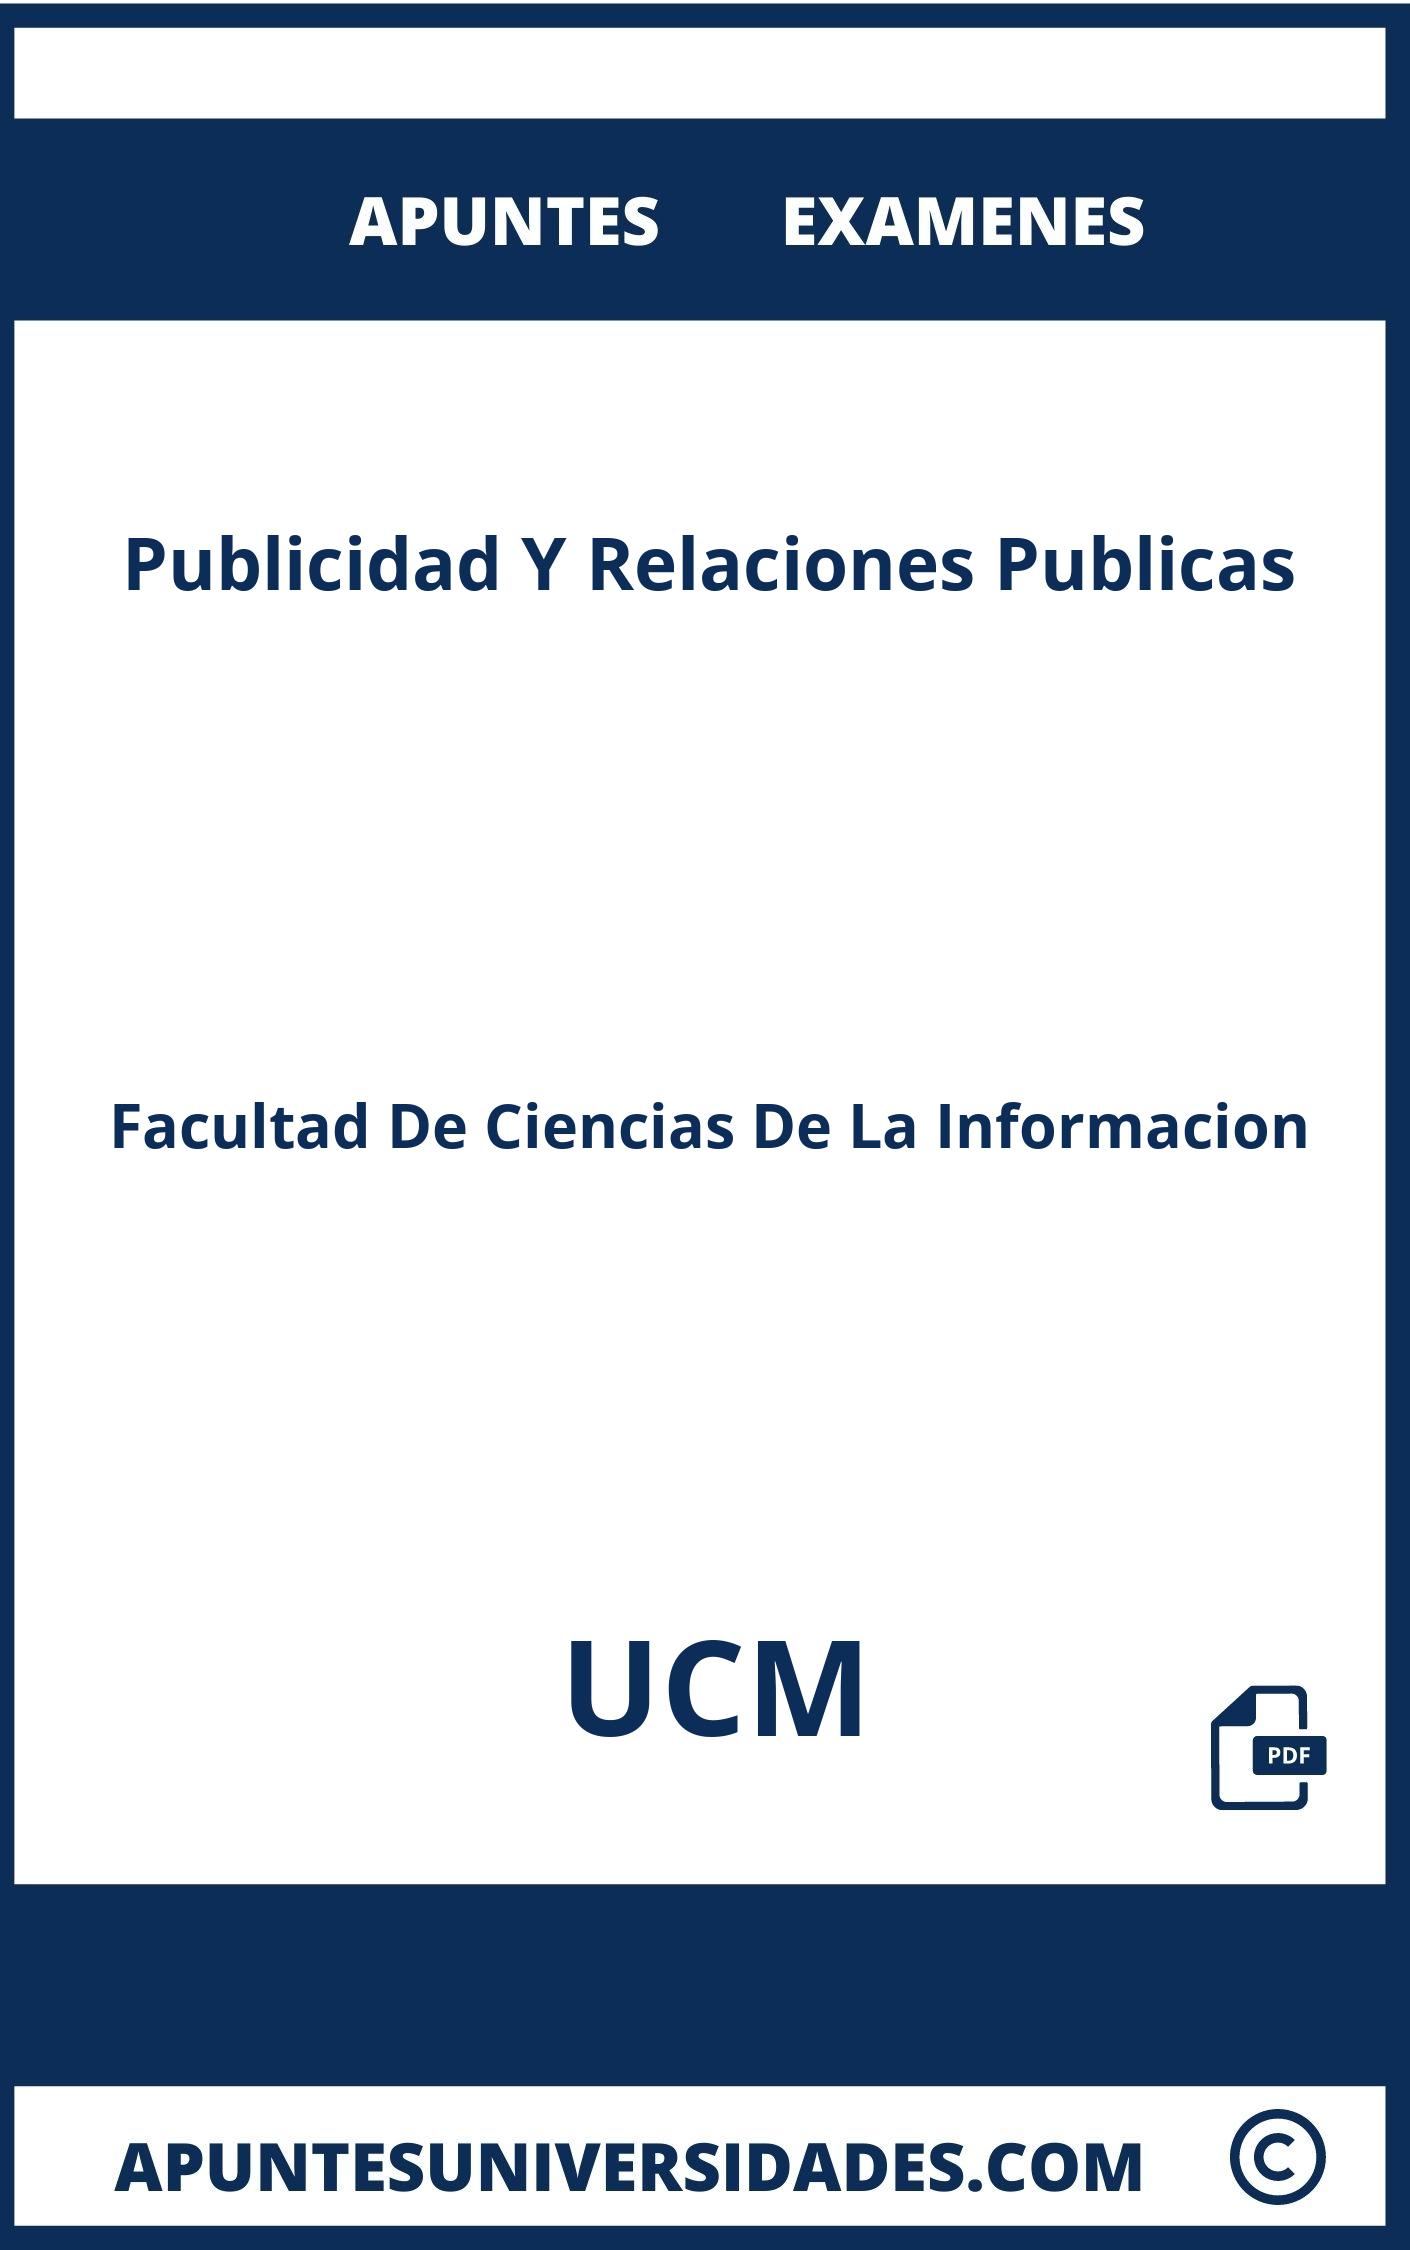 Publicidad Y Relaciones Publicas UCM Apuntes Examenes